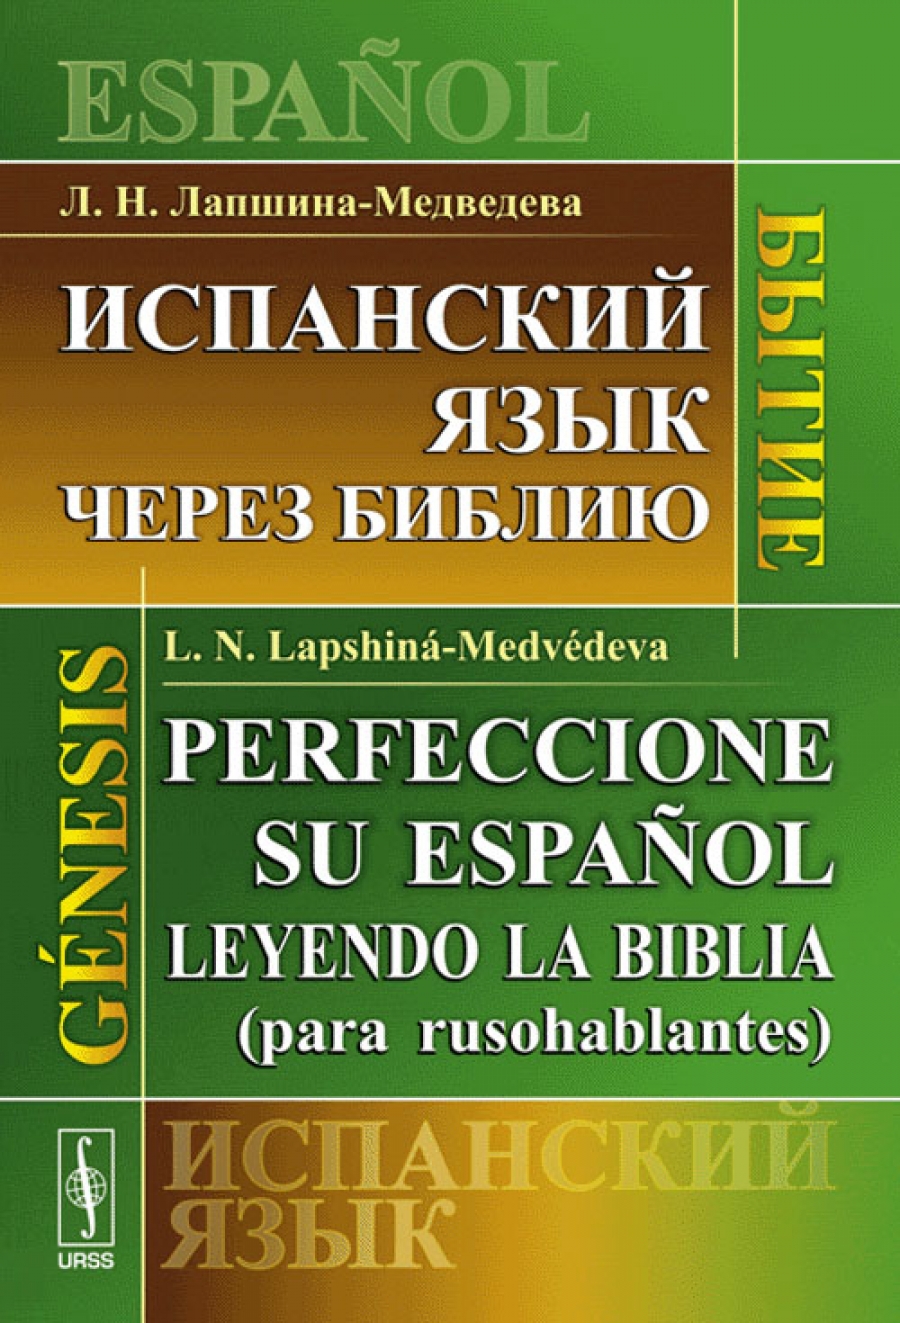 - ..    : / Perfeccione su Espanol: Leyendo la Biblia (para rusohablantes). Genesis 